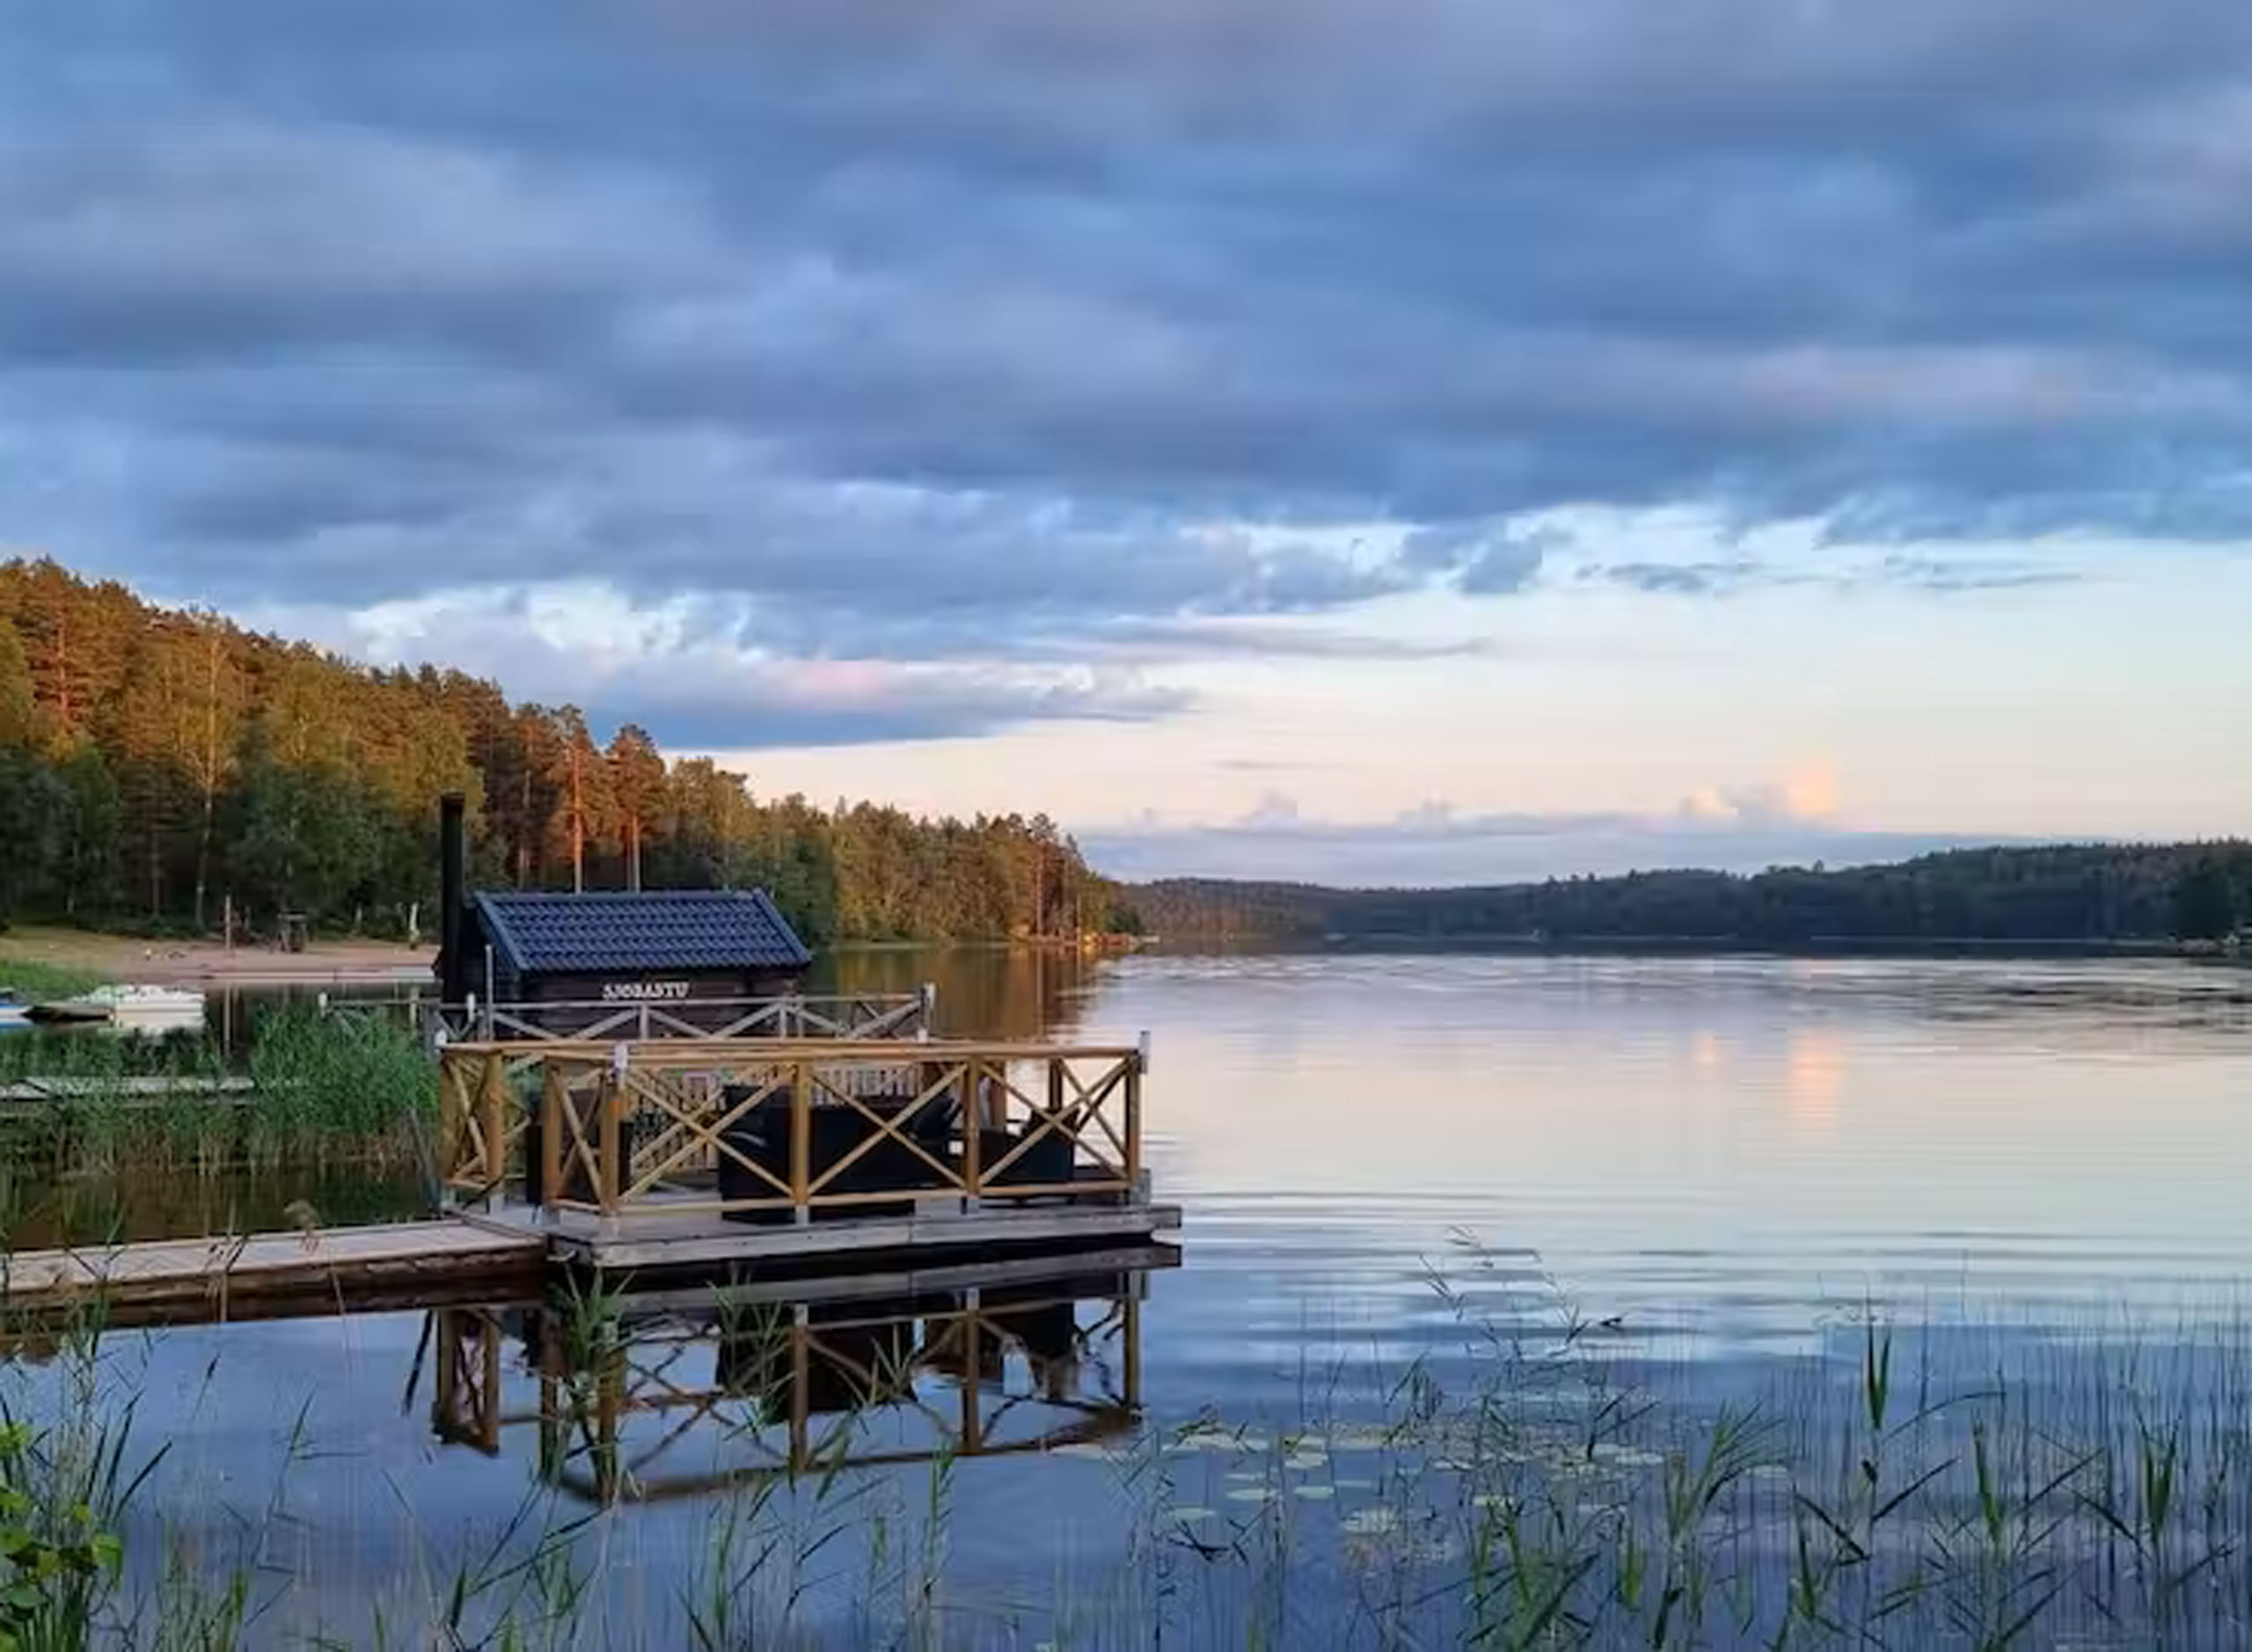 Vimmerby Camping ligger vackert vid sjön Nossen. Copyright: Pintrip.de 